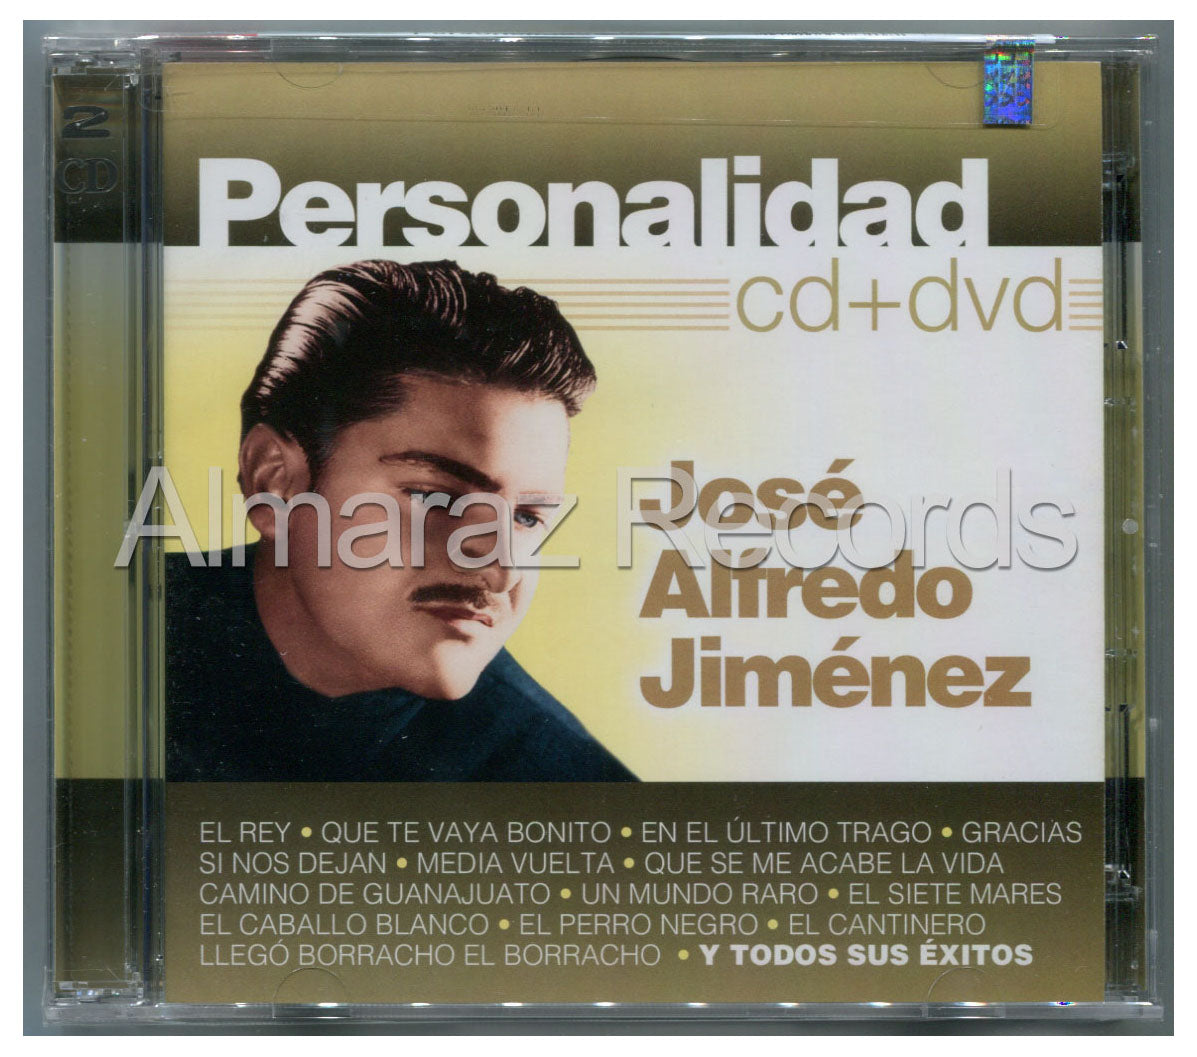 Jose Alfredo Jimenez Personalidad CD+DVD - Almaraz Records | Tienda de Discos y Películas
 - 1